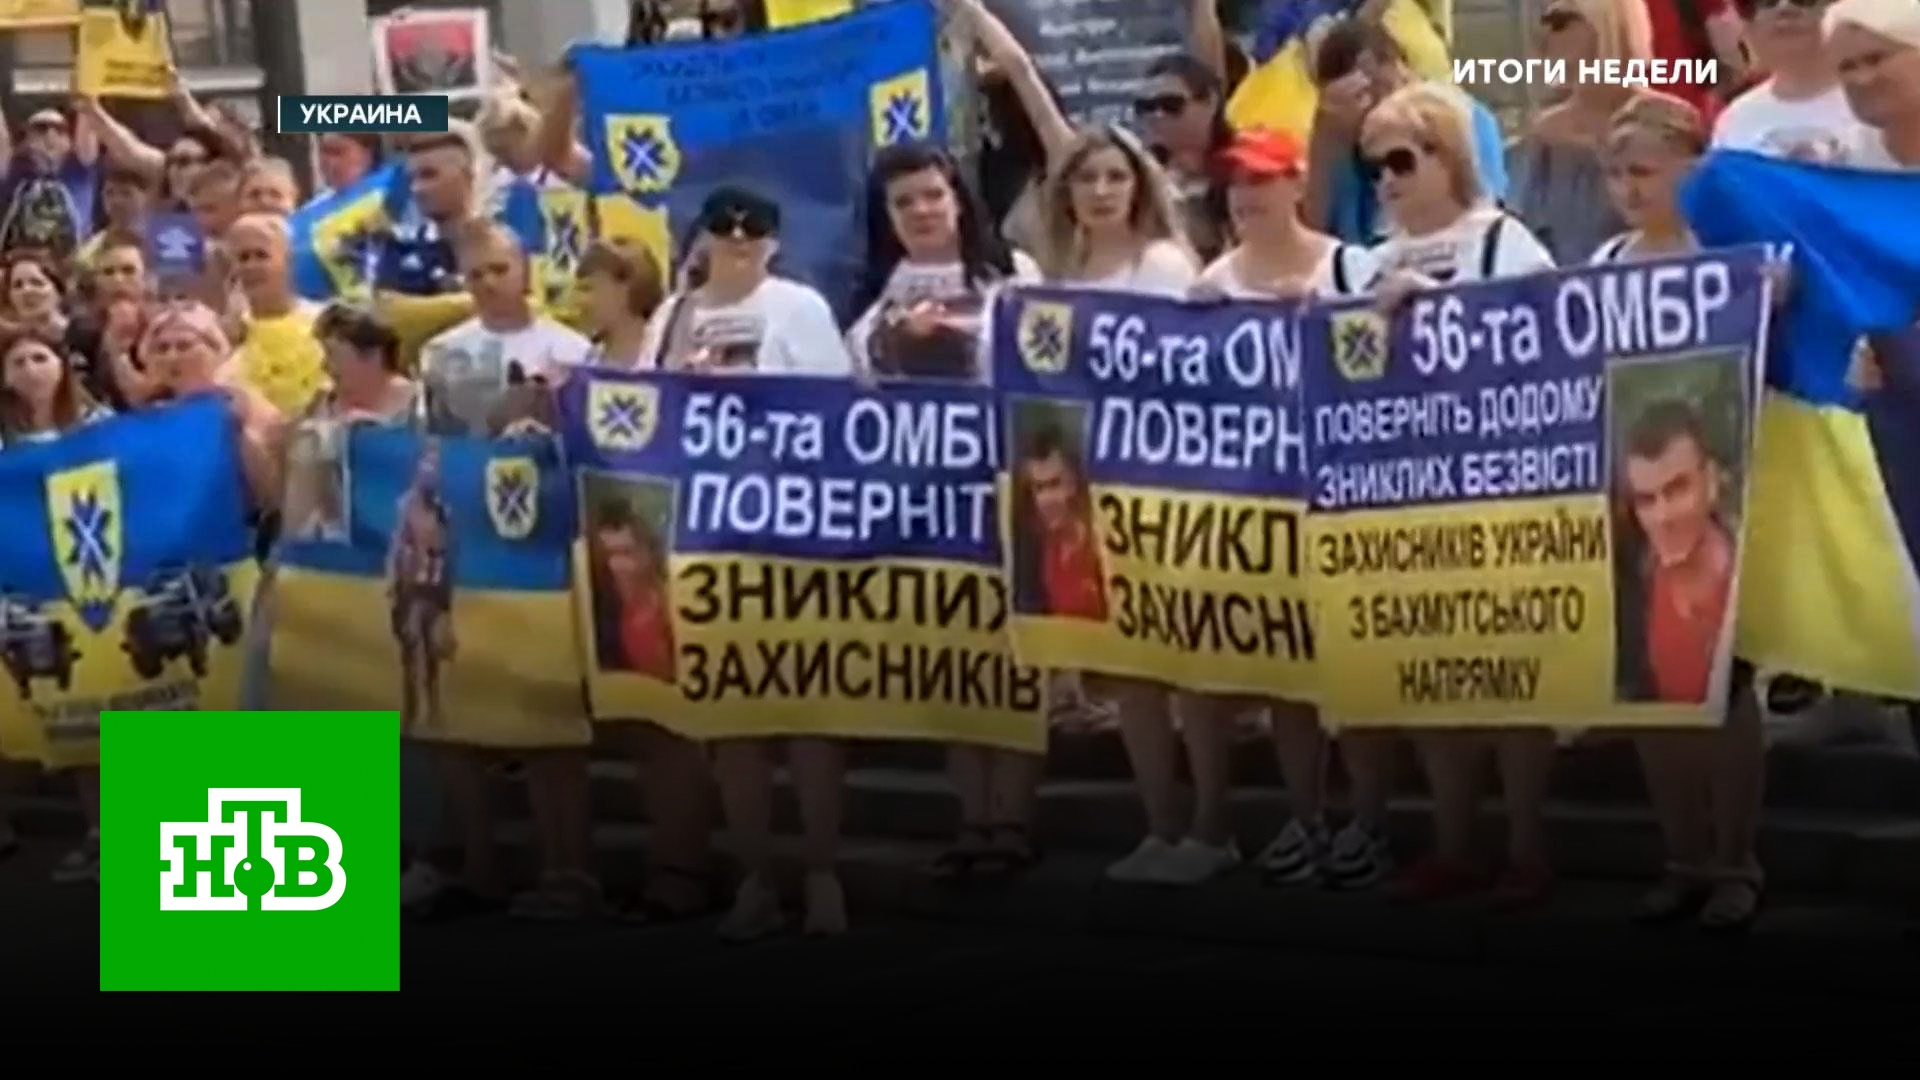 «Не мобилизация, а могилизация»: на Украине приходят повестки женщинам и старикам | «Итоги недели»